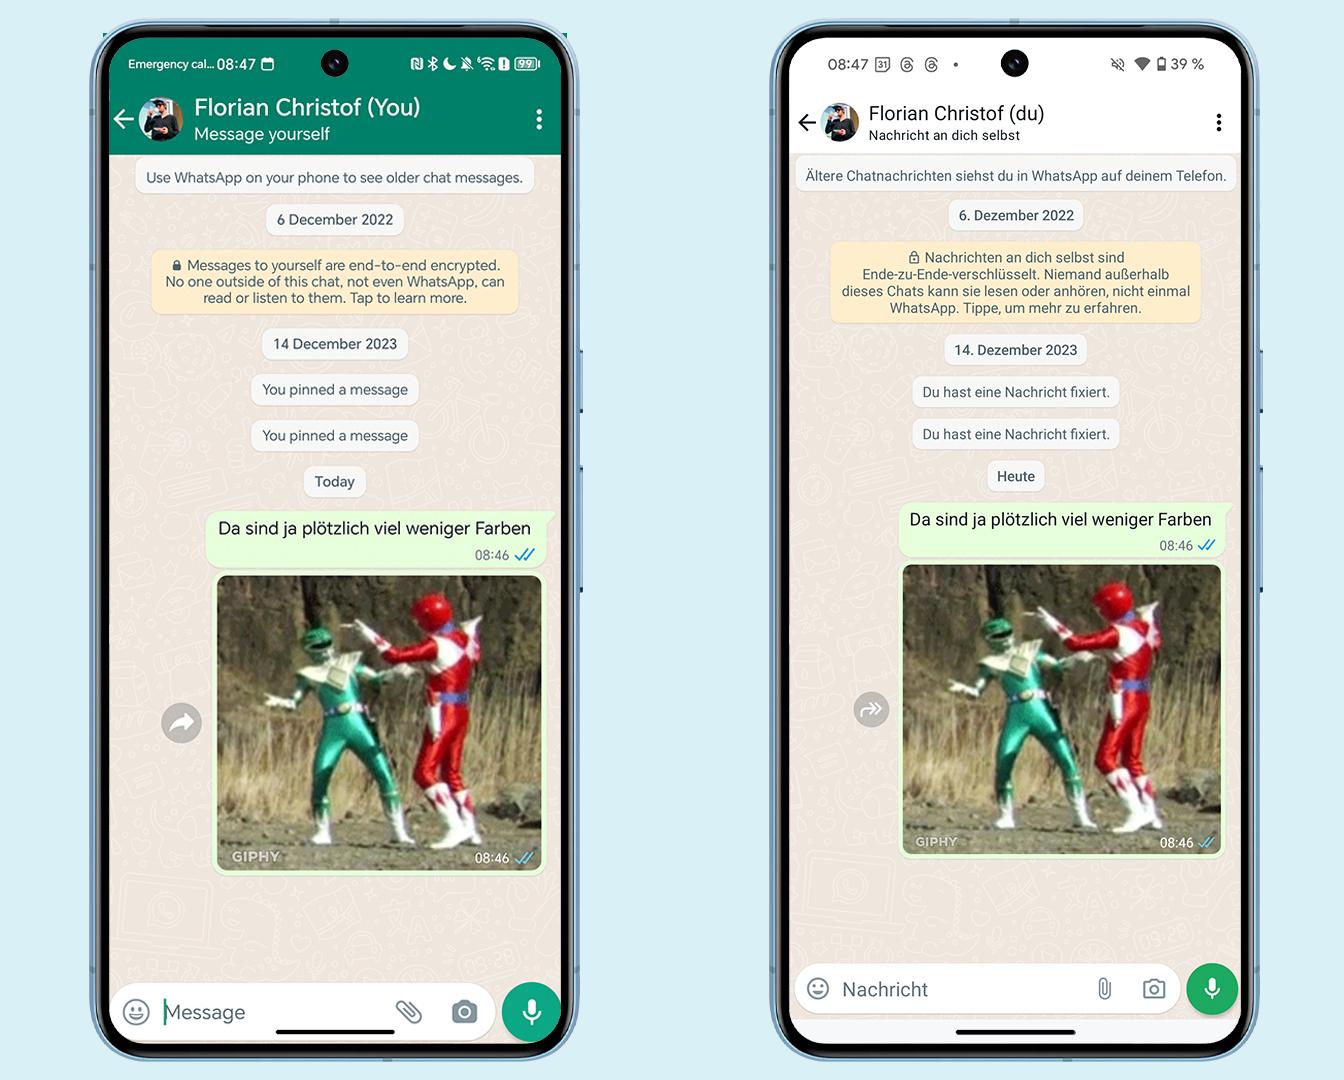 android, neues design: whatsapp ist plötzlich farblos